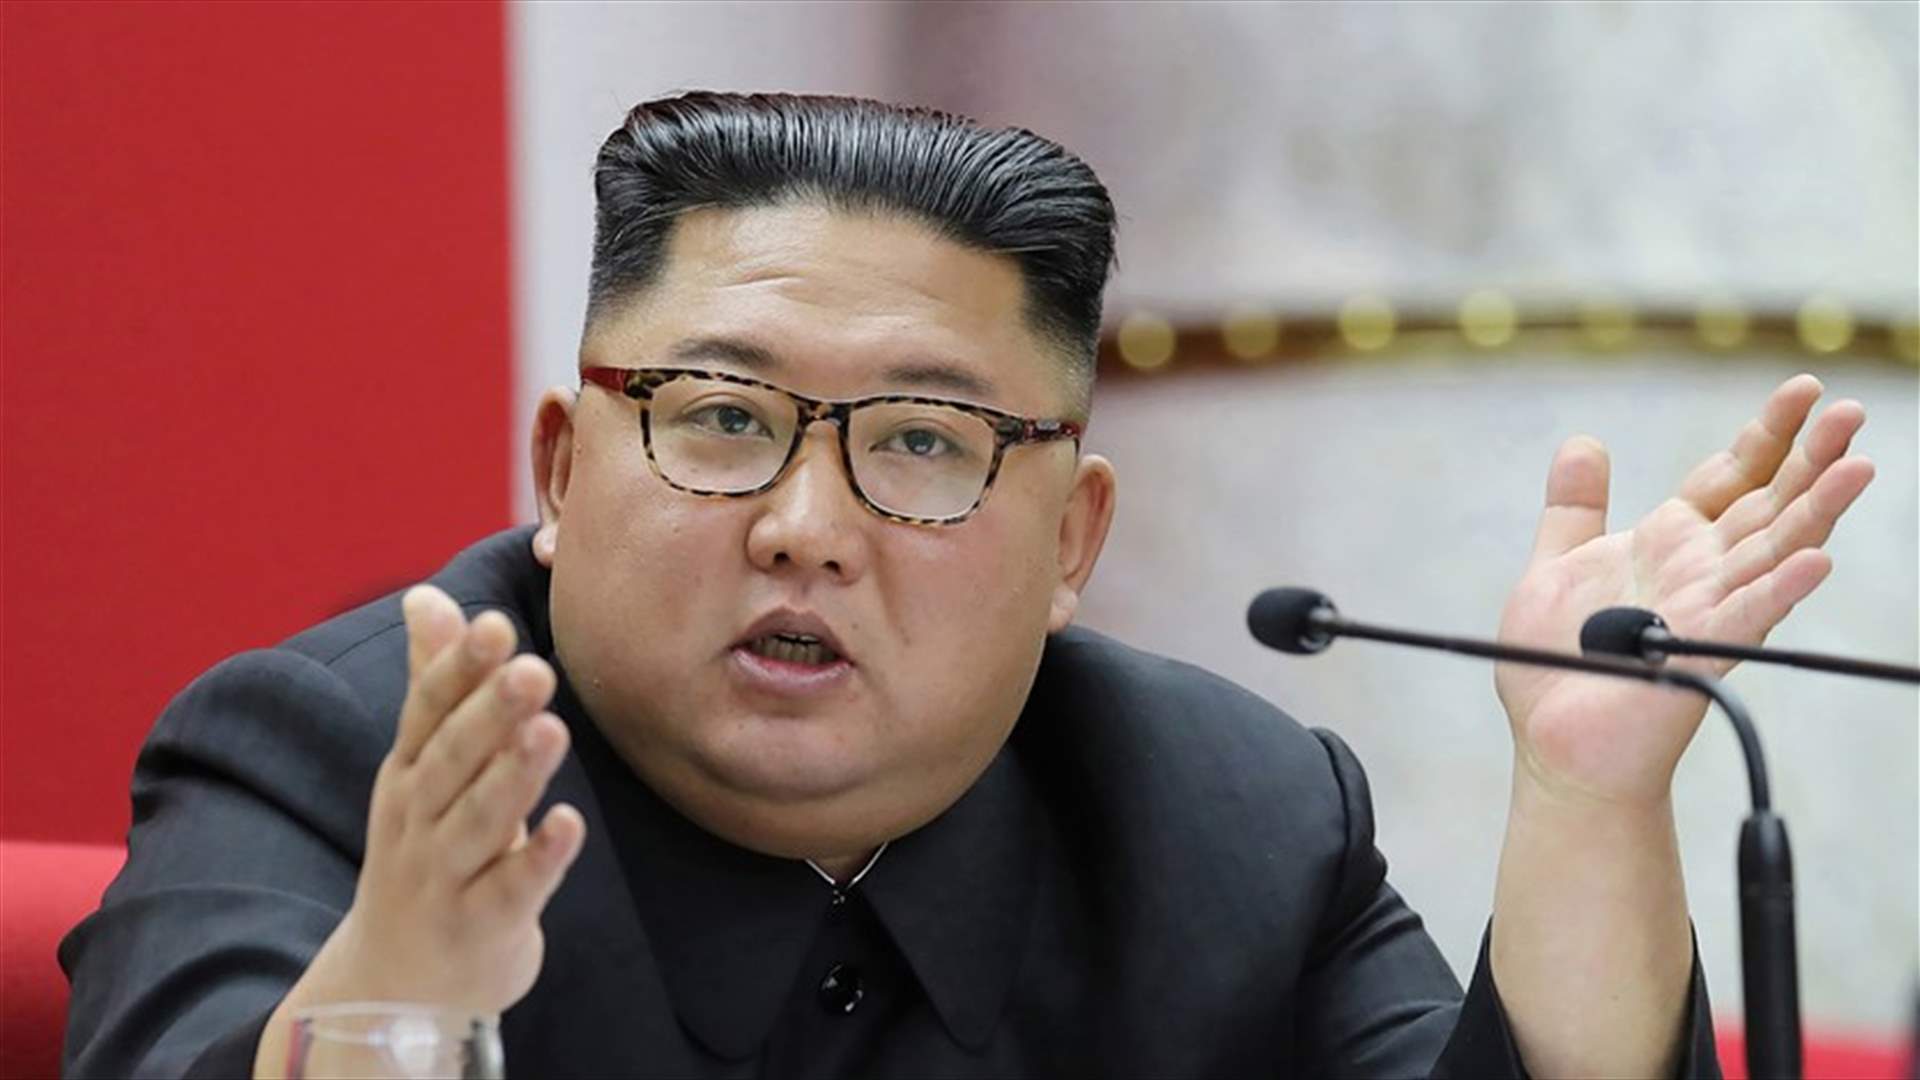 وكالة: زعيم كوريا الشمالية يستعد لخياري الحوار والمواجهة مع أميركا